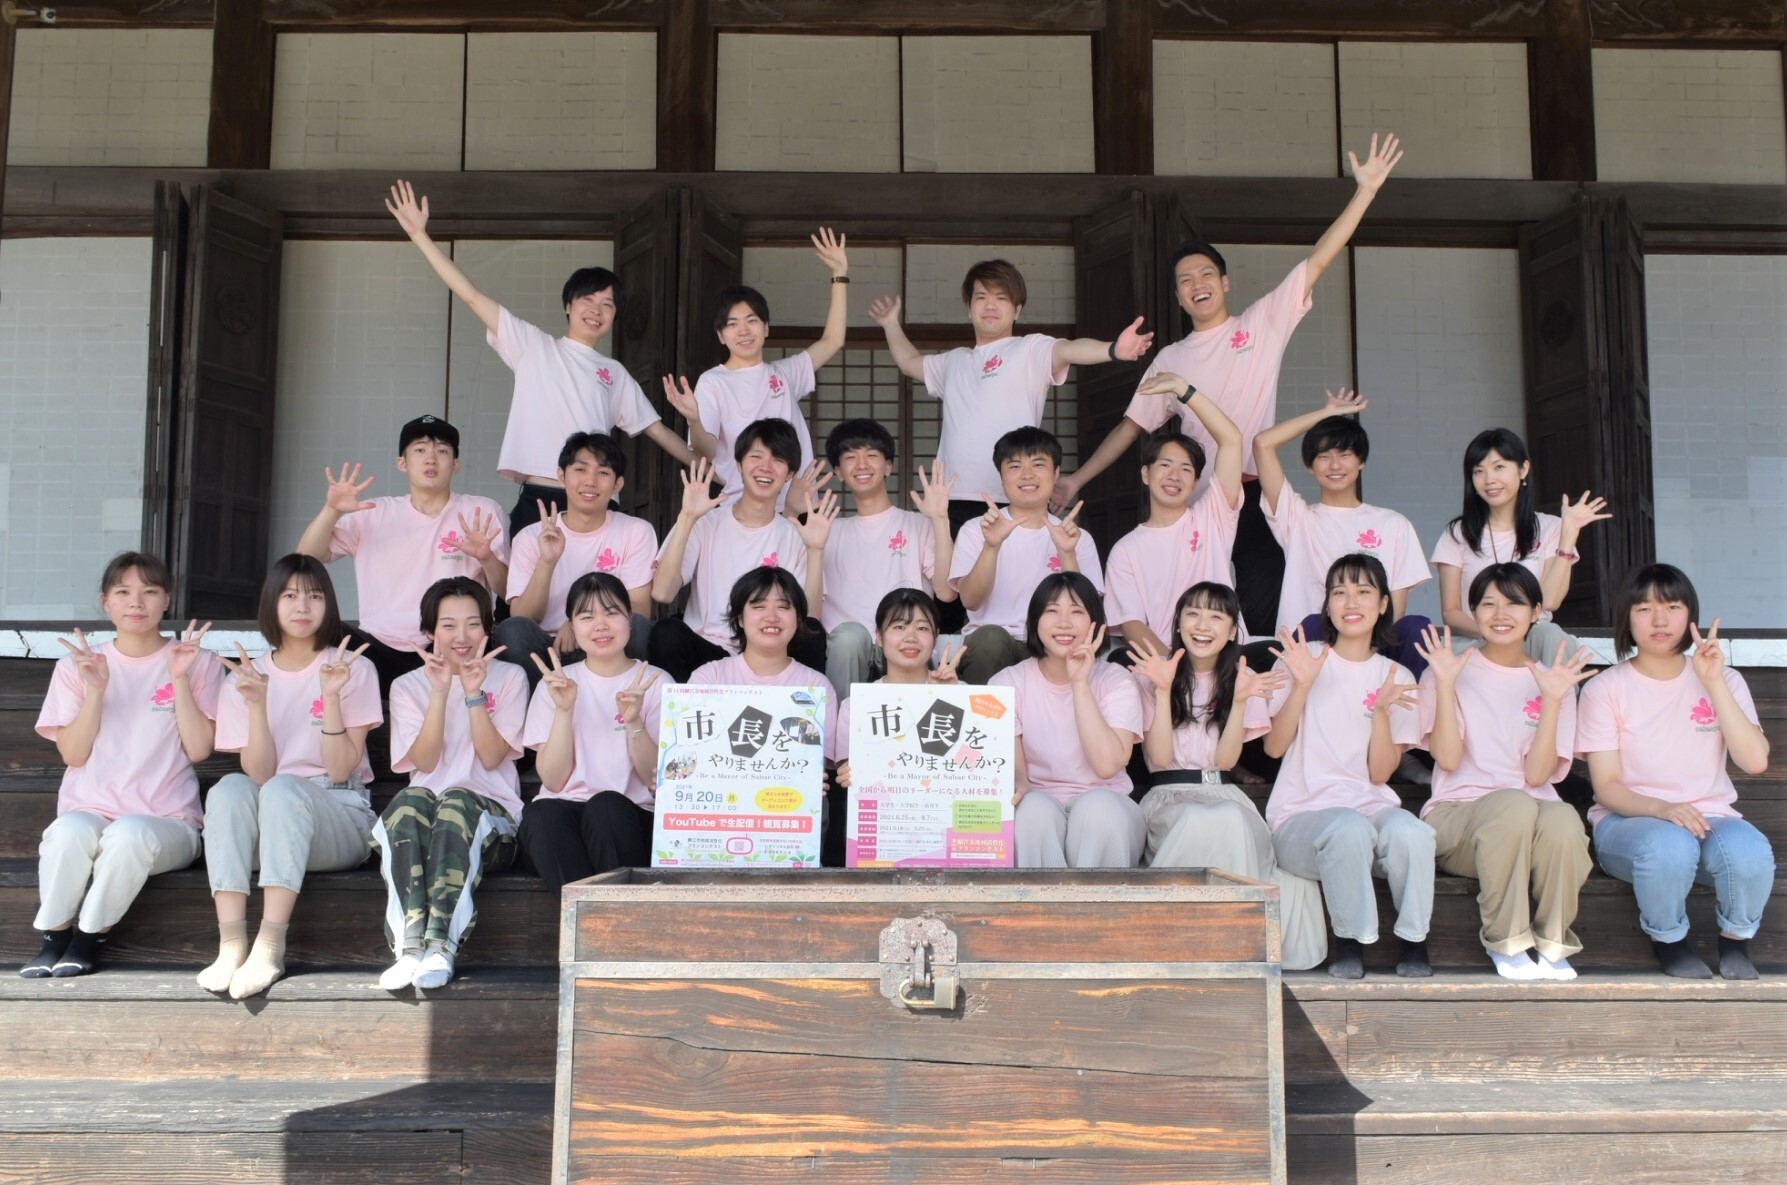 「鯖江市地域活性化プランコンテスト」を運営する学生団体